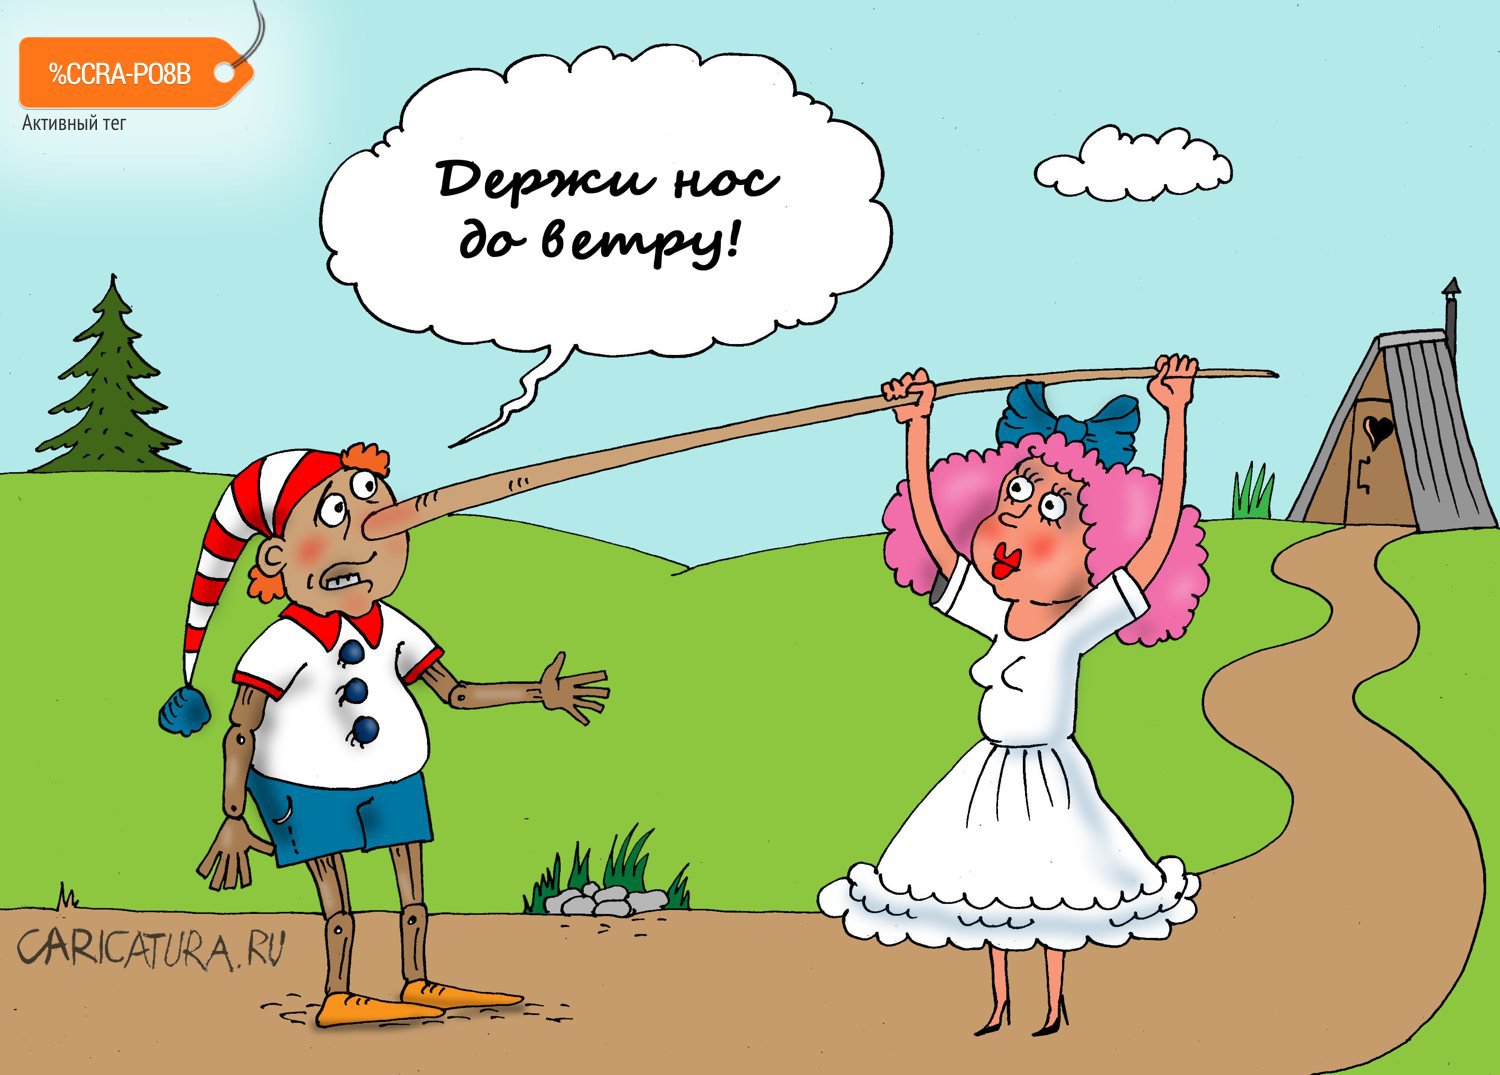 Карикатура "Носопырка", Валерий Тарасенко